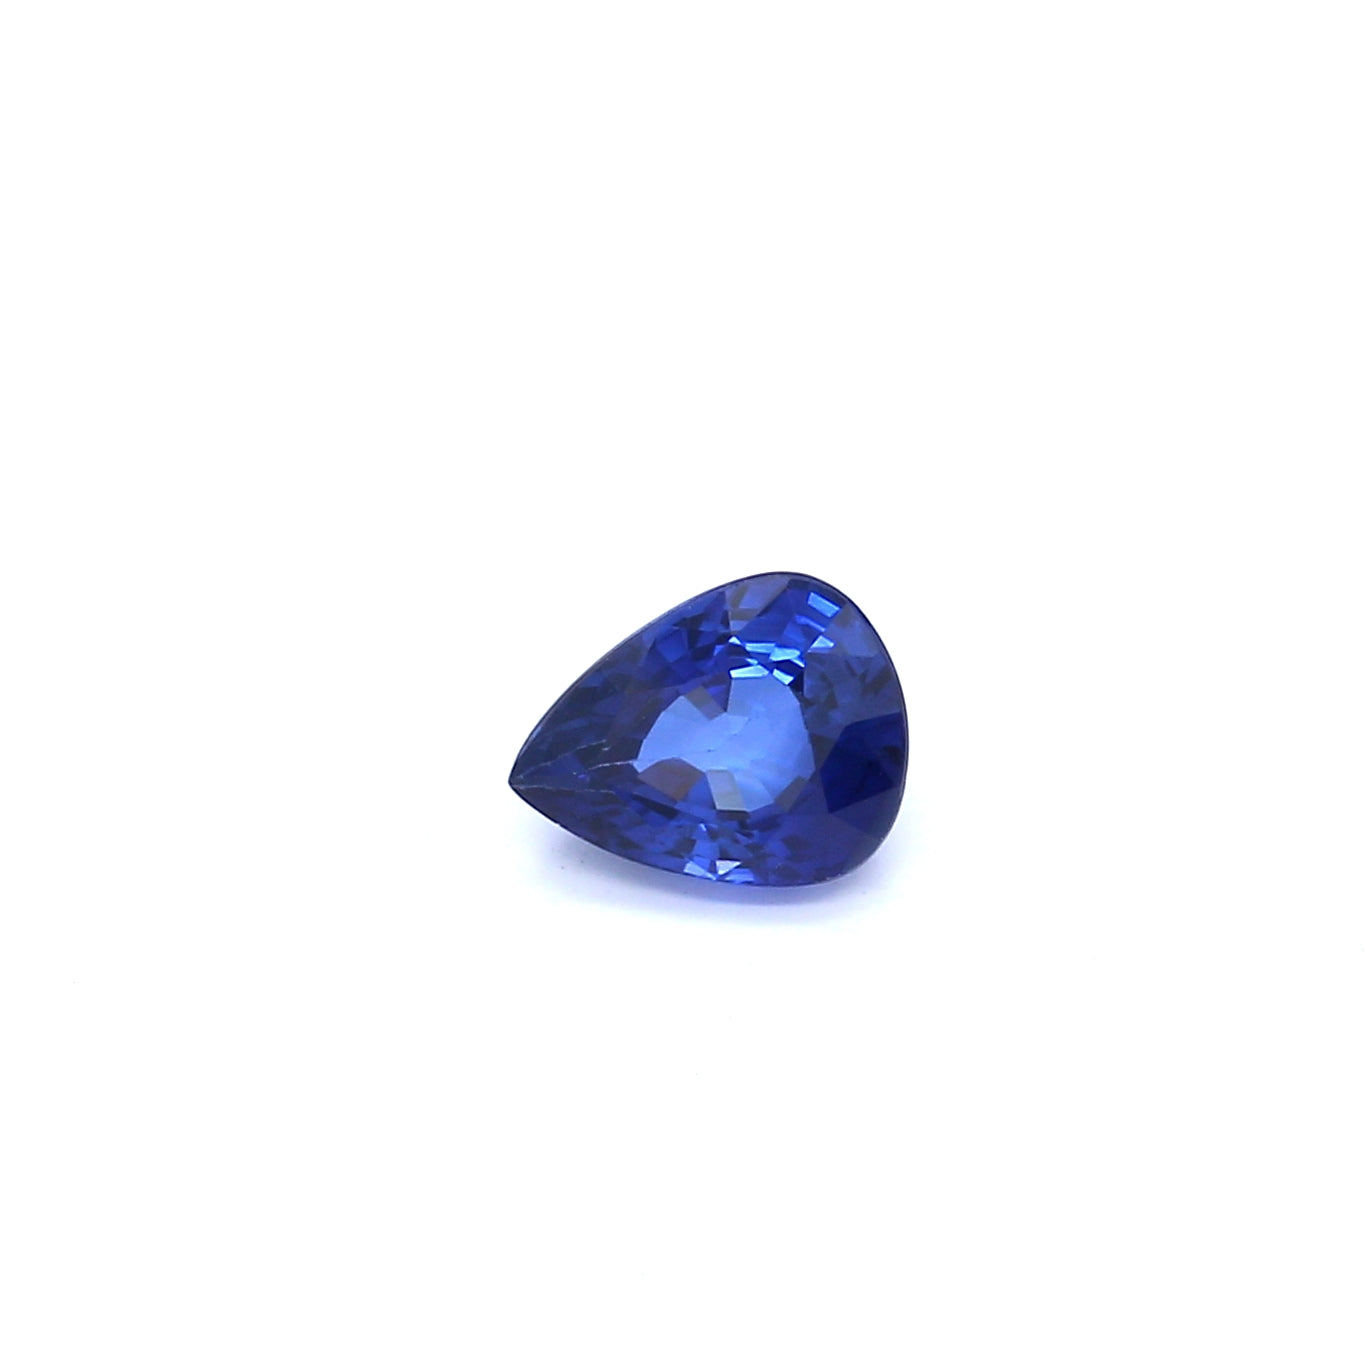 1.06ct Pear Shape Sapphire, Heated, Sri Lanka - 6.86 x 5.37 x 3.64mm